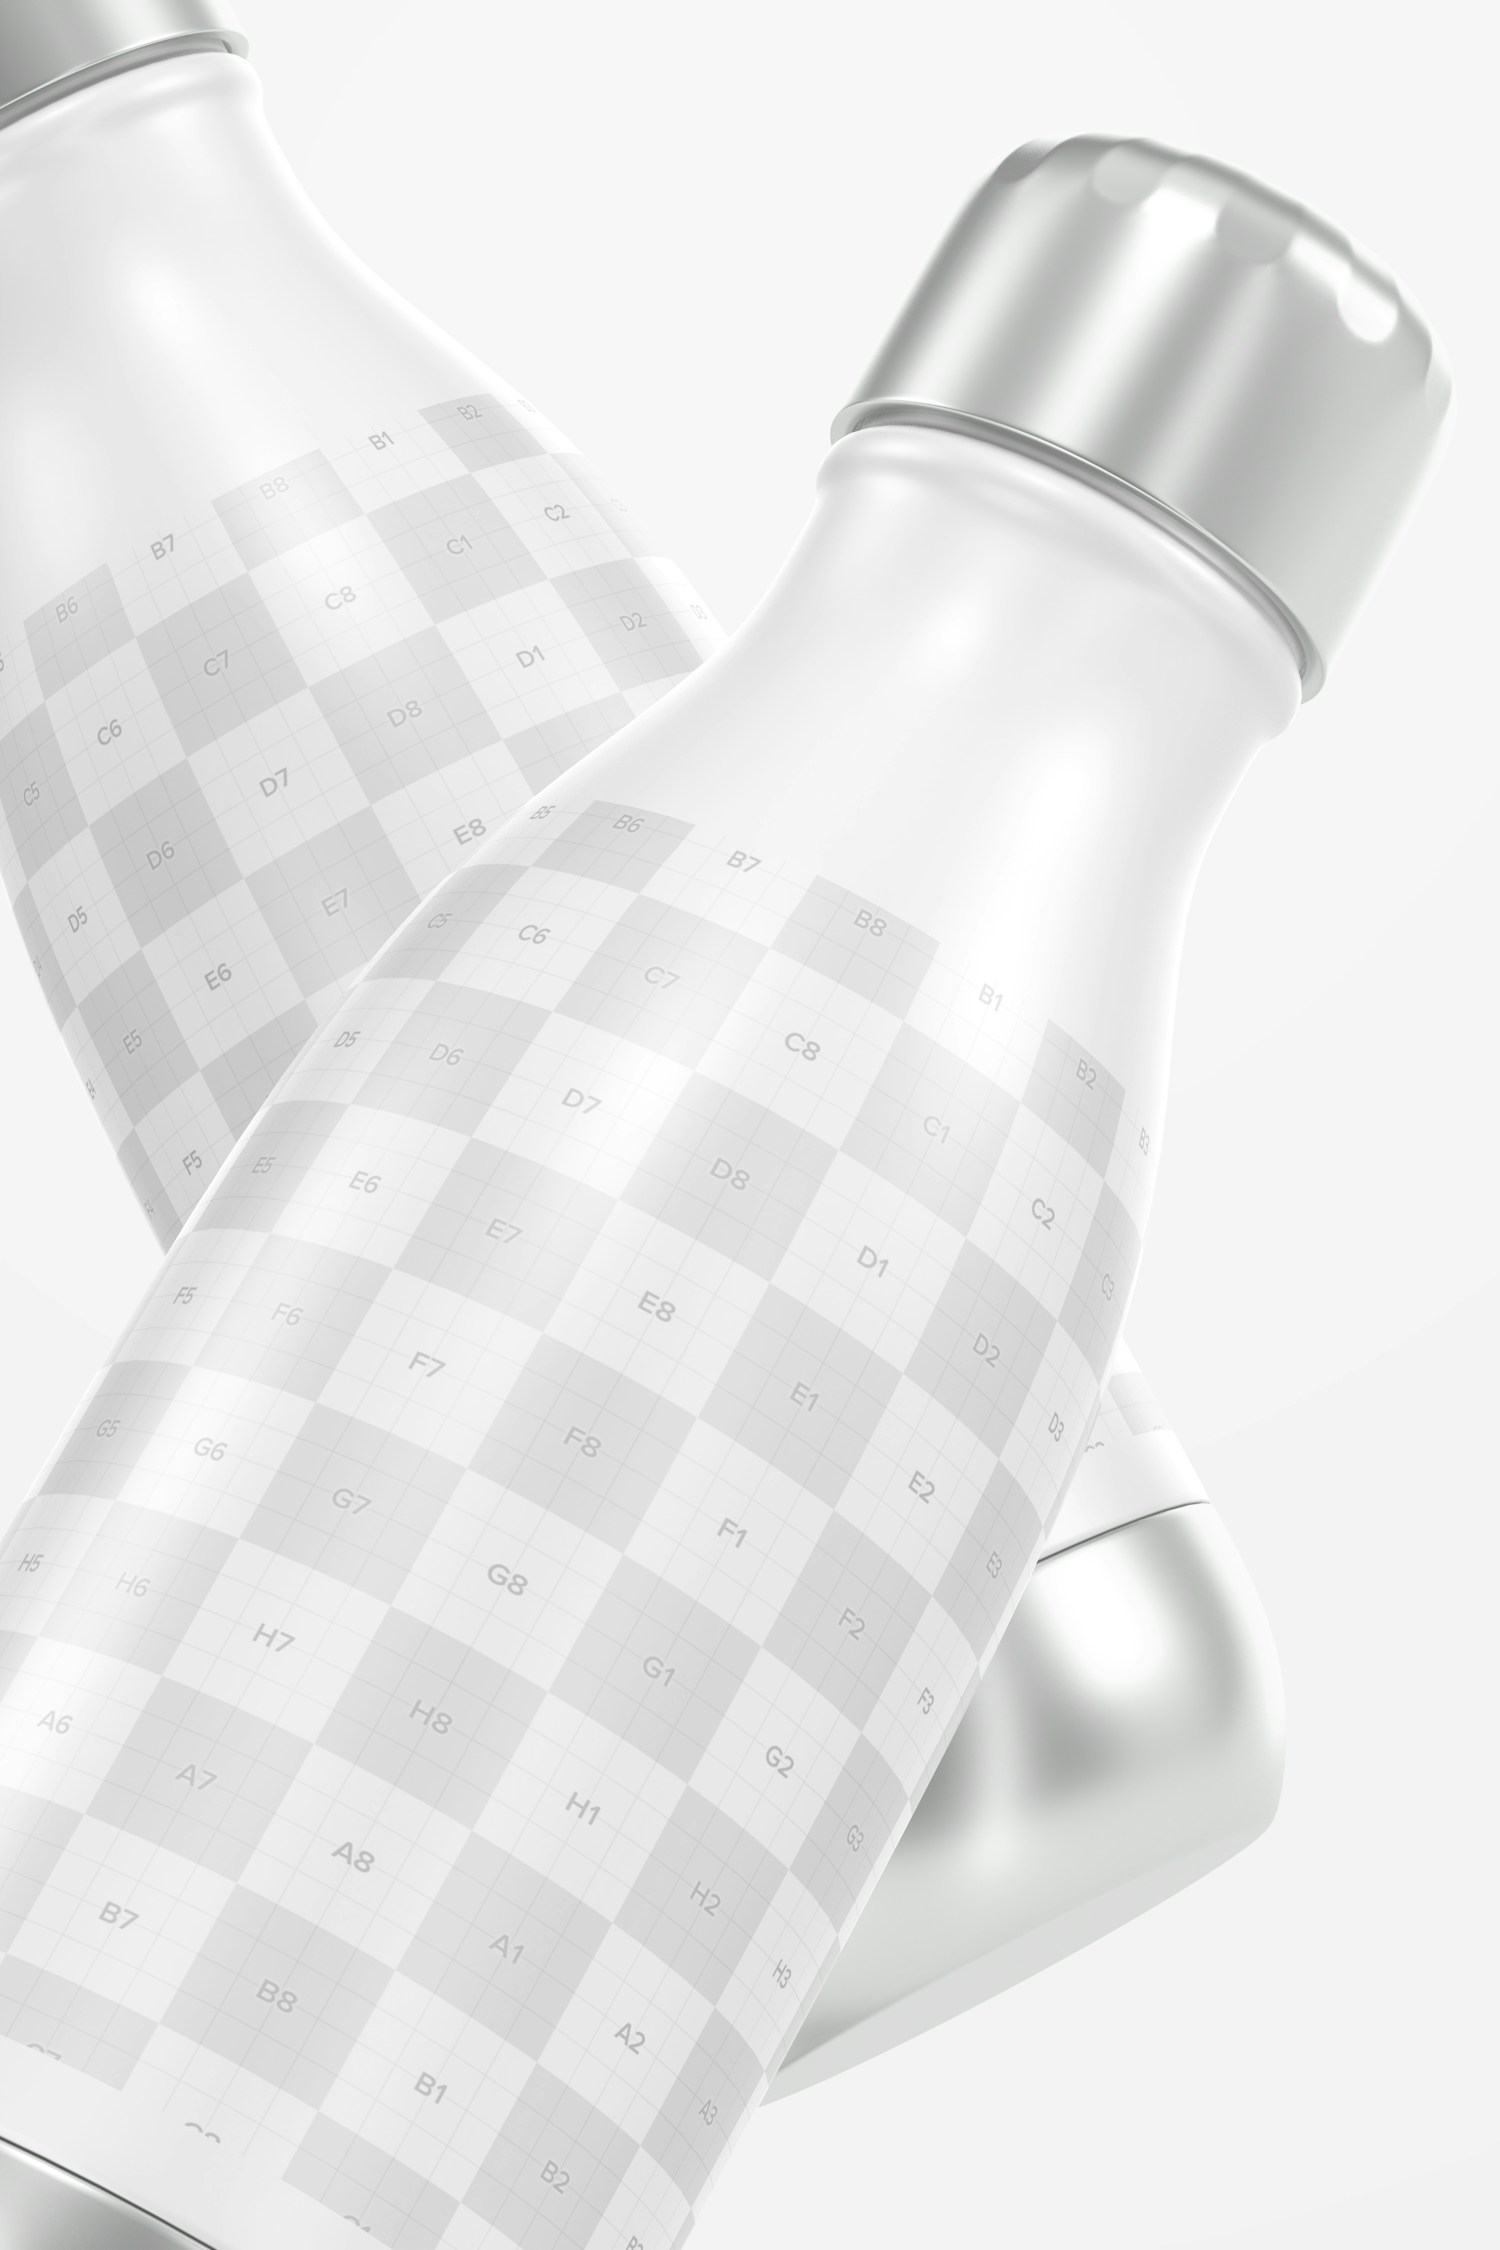 17 oz Metallic Water Bottle Mockup, Close Up